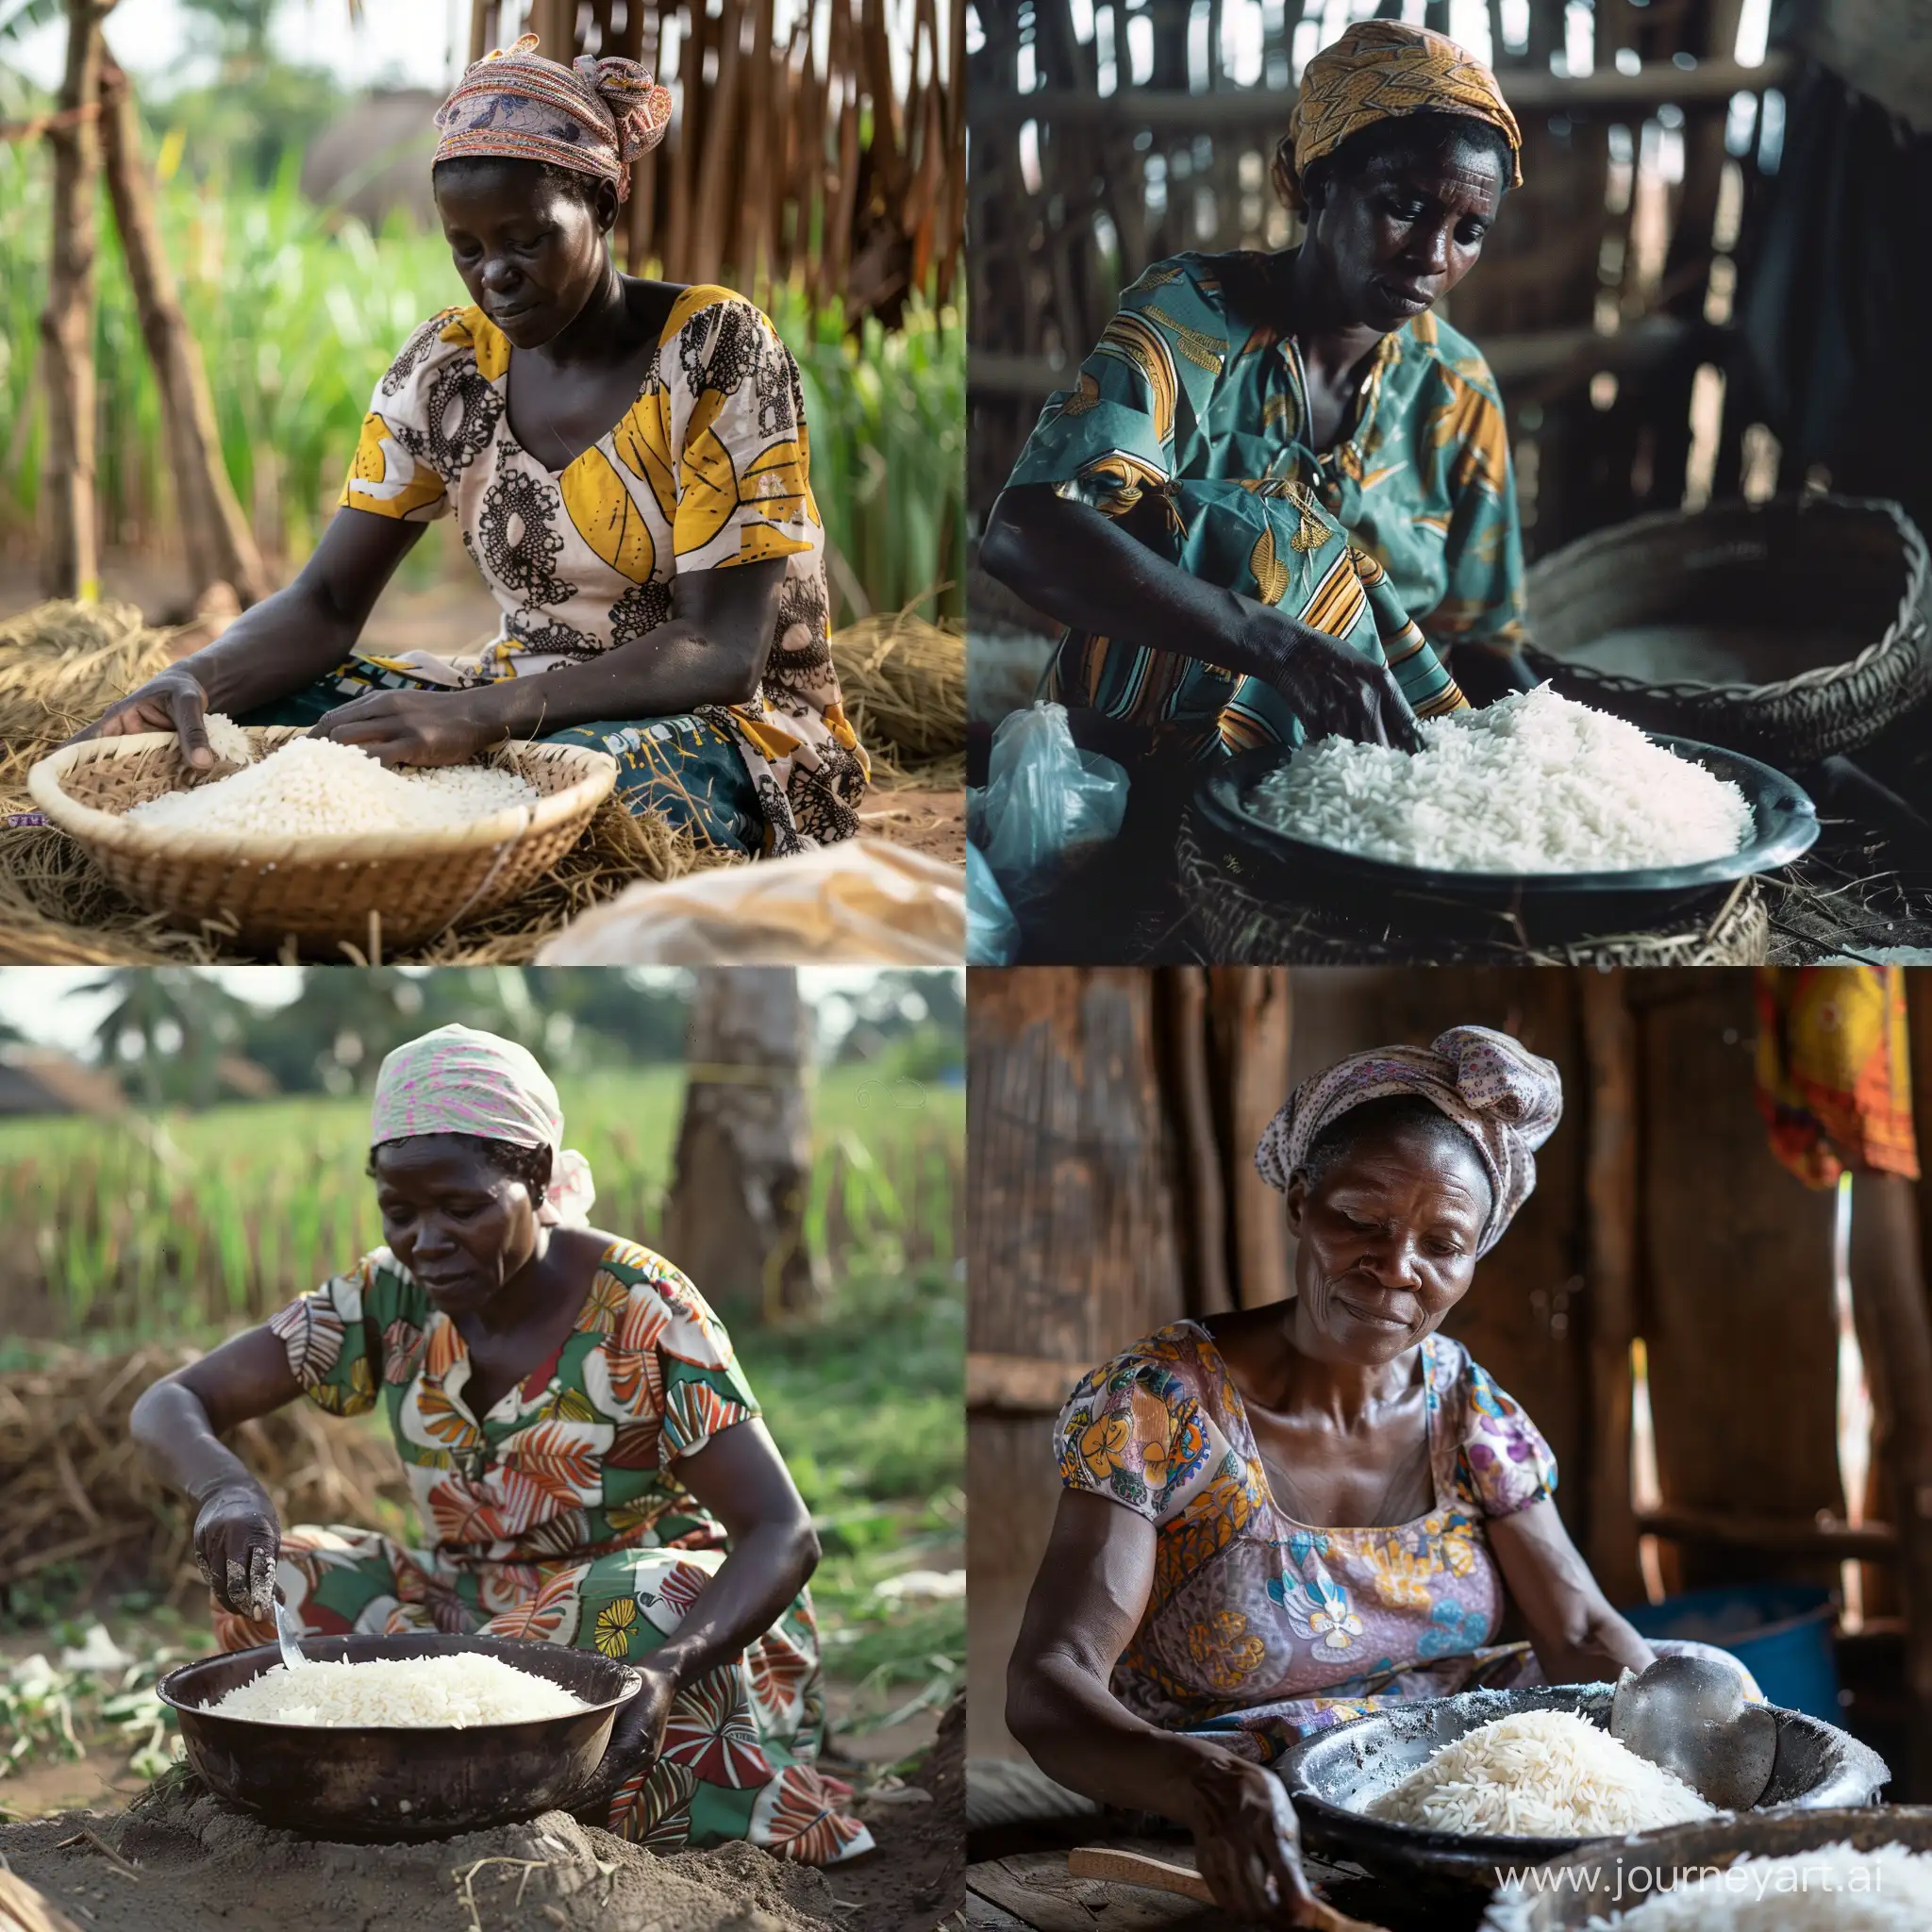 African rural woman preparing rice.